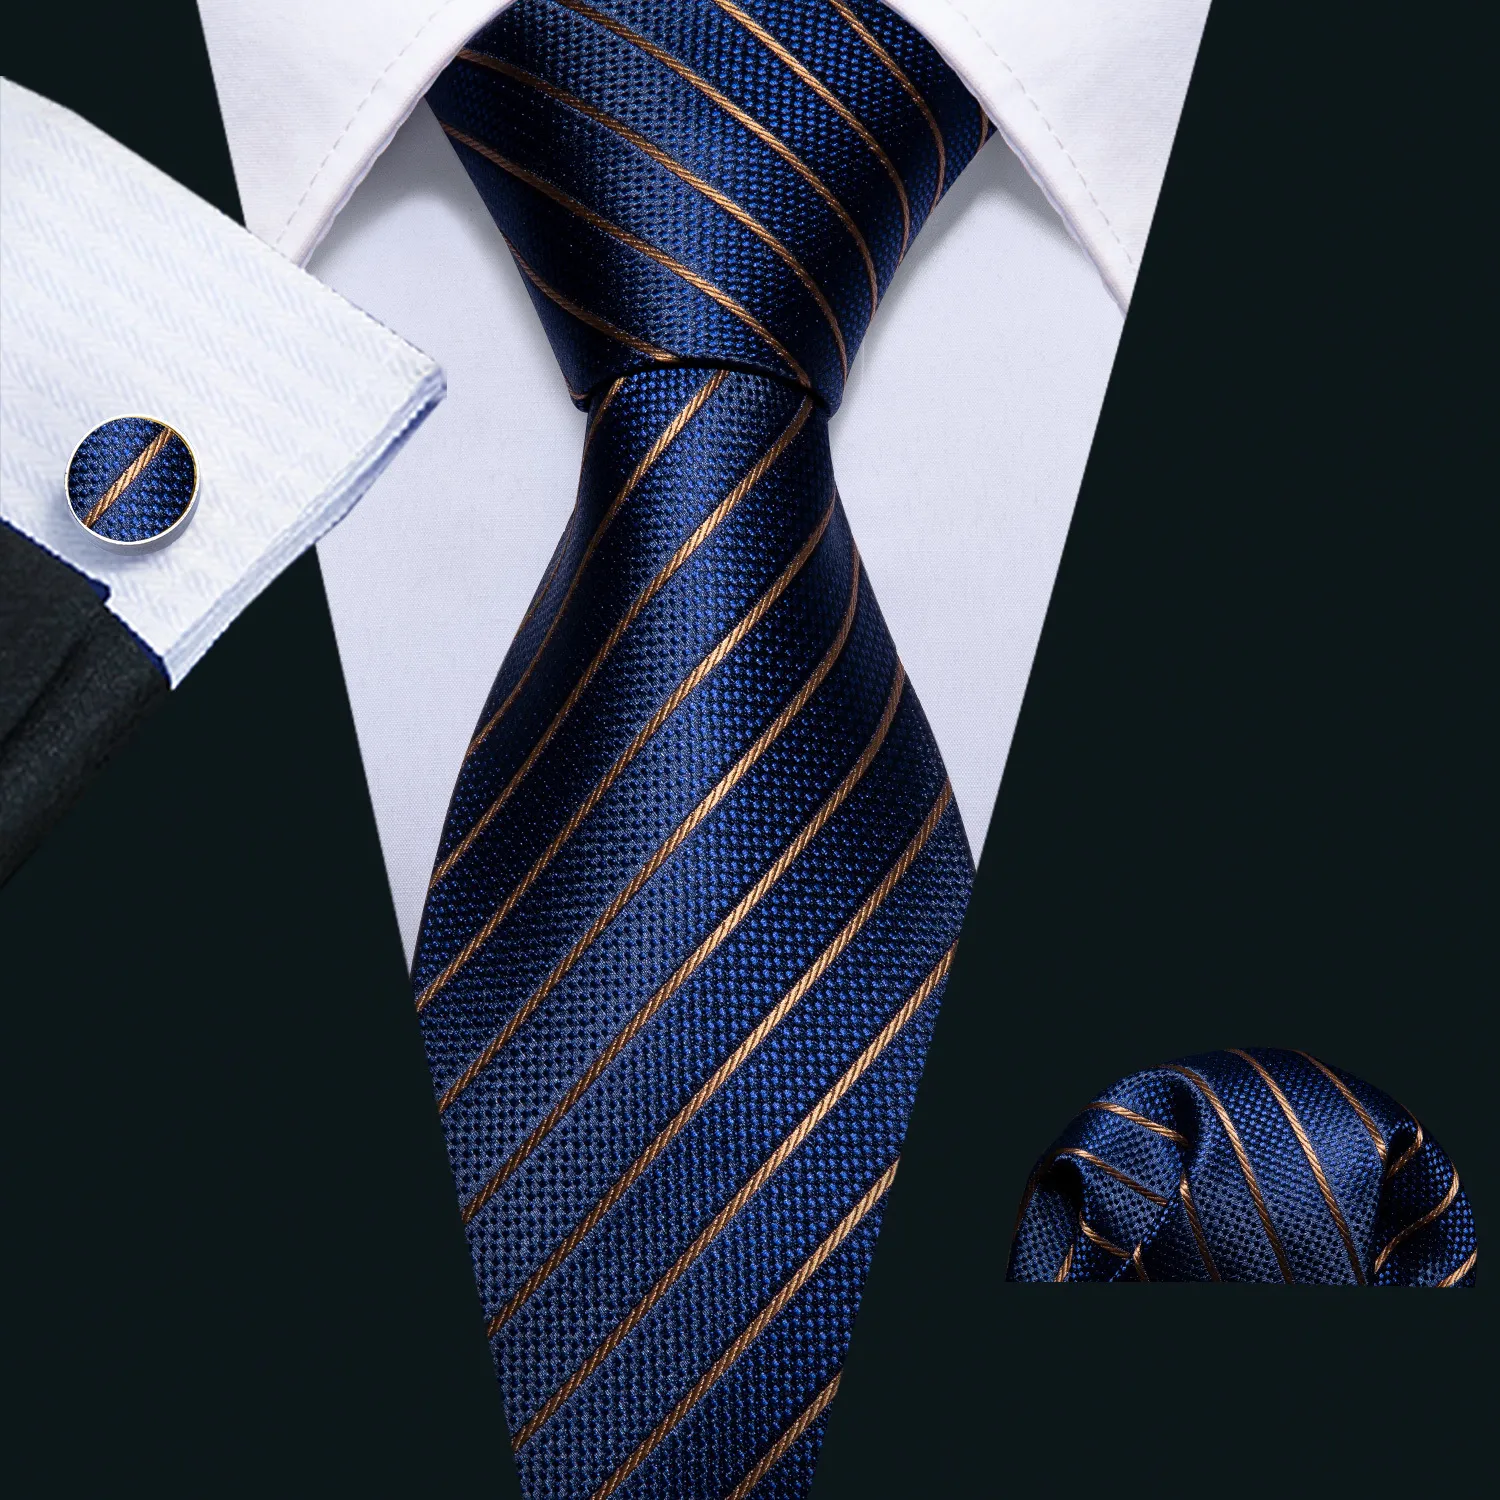 Bow Ties Men Tie Złoty granatowy w paski 100% jedwabny krawat barry